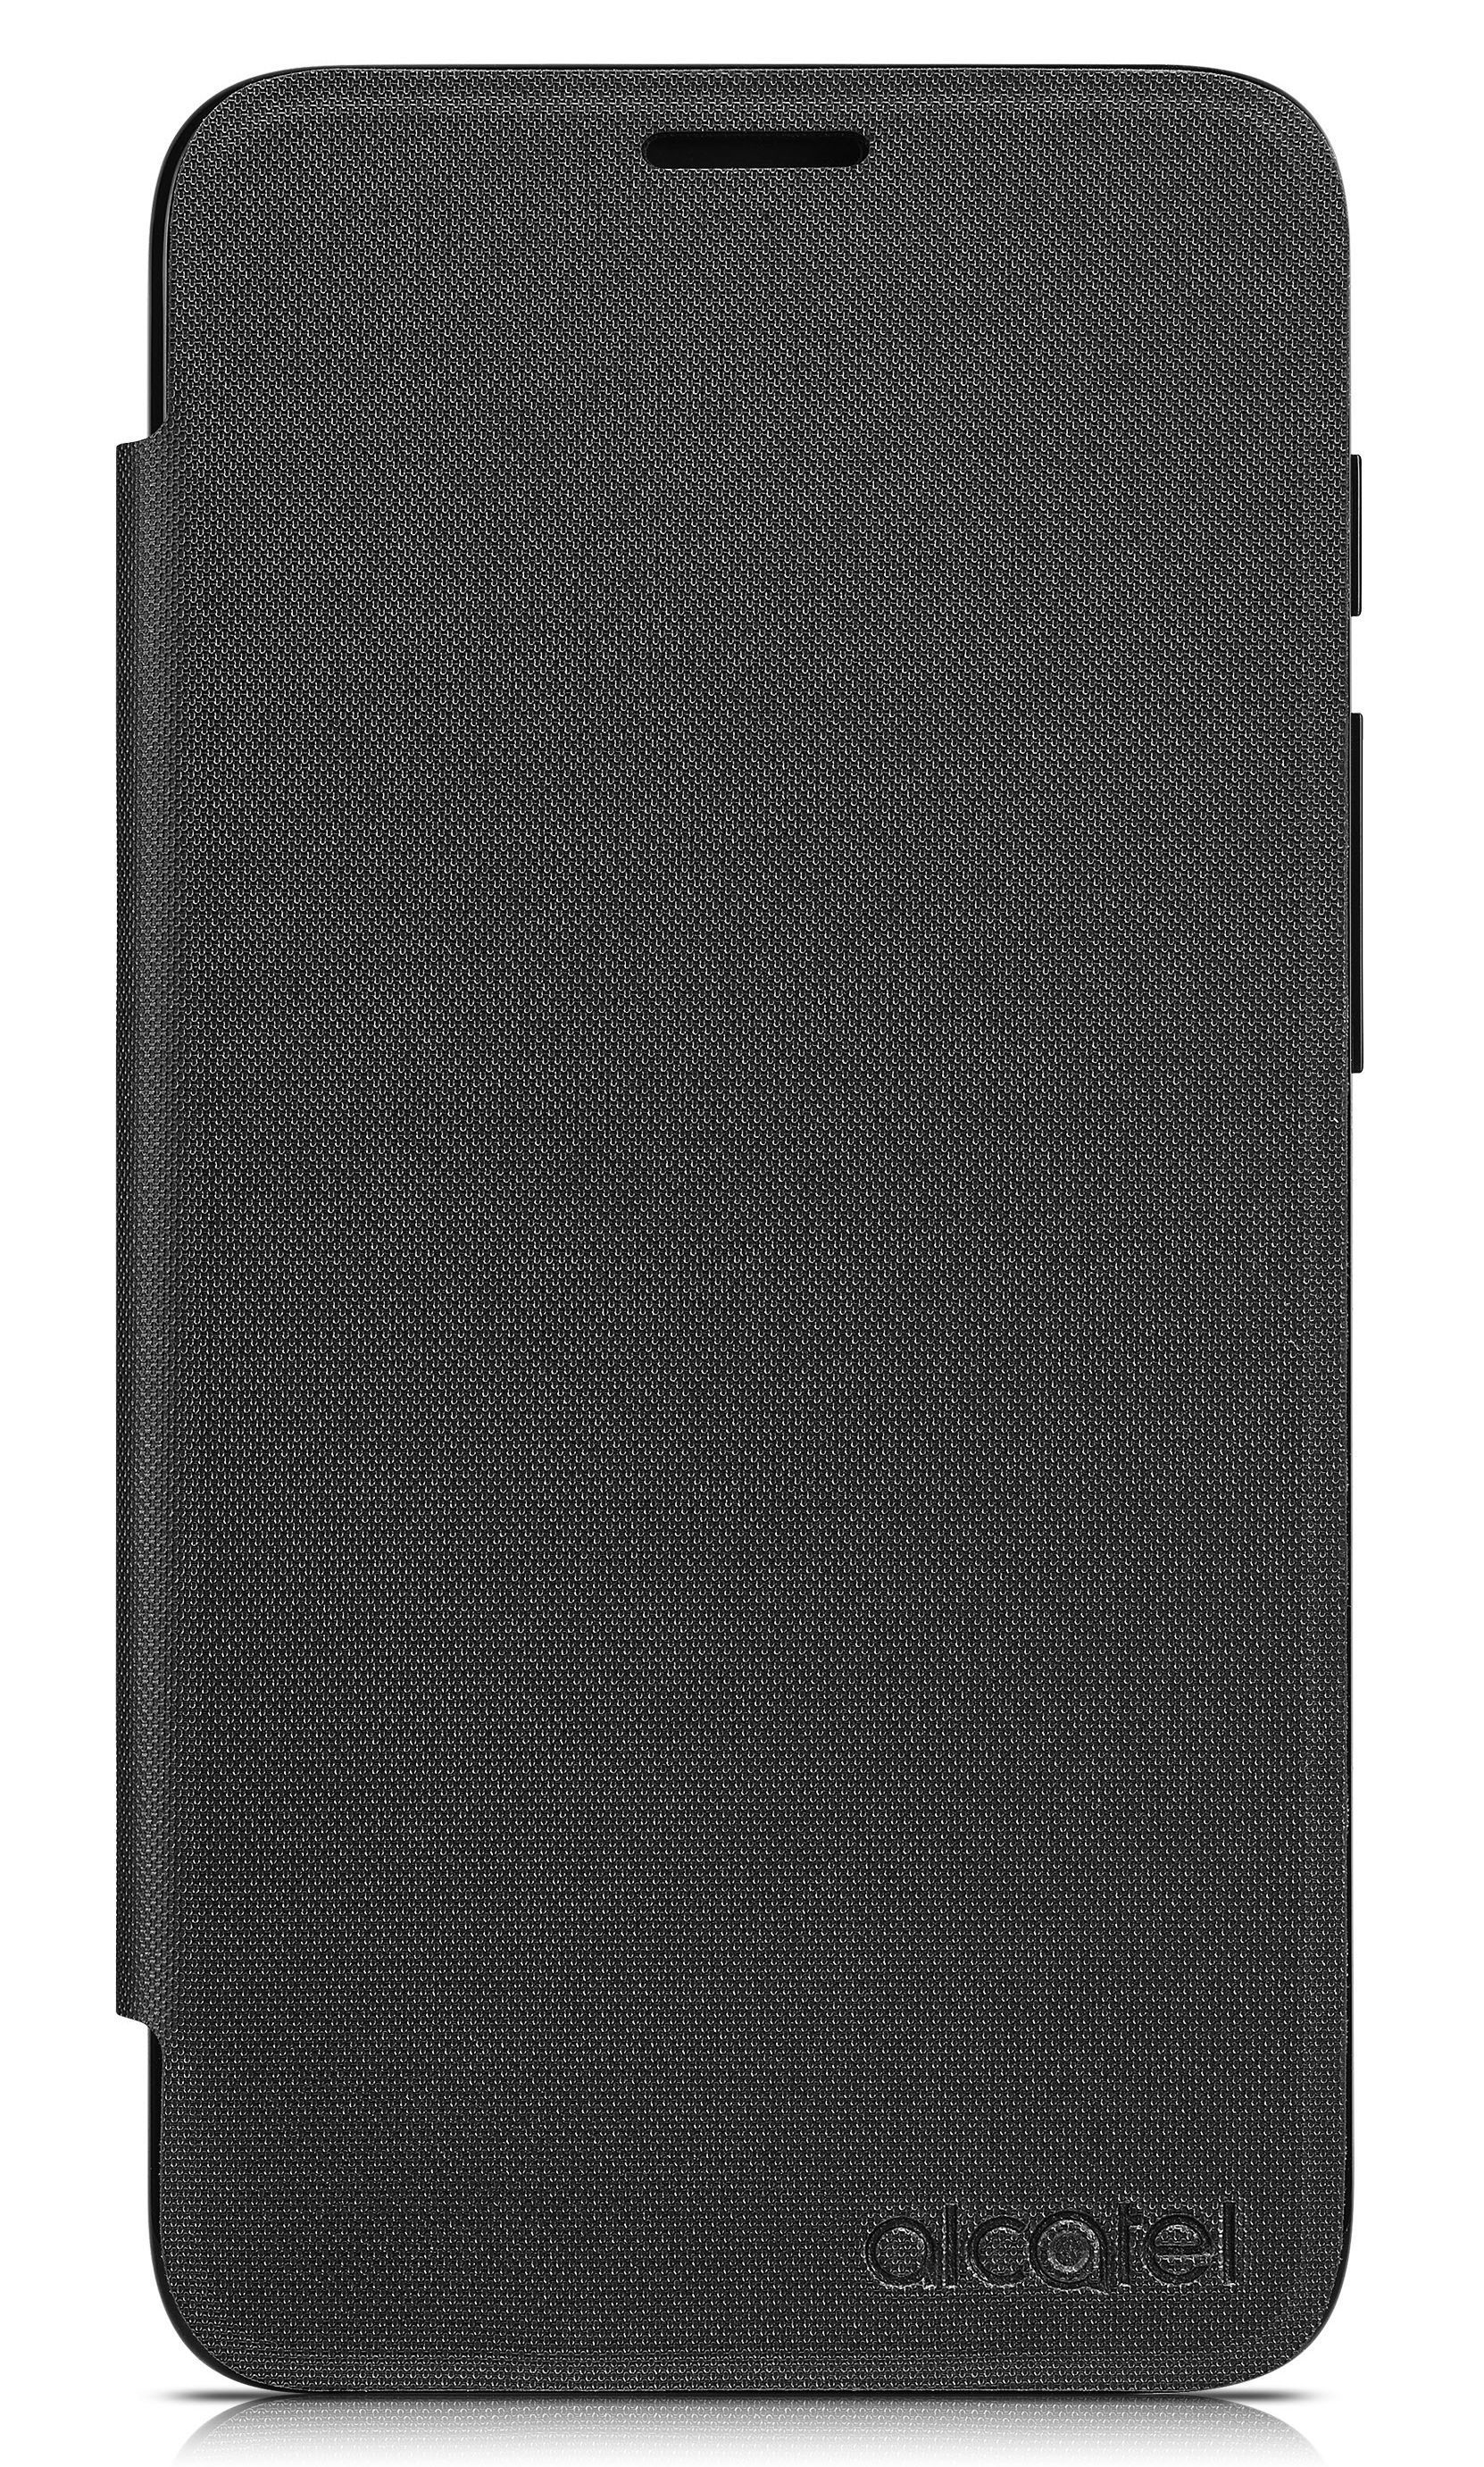 FC5010, PIXI 4-5, Schwarz Bookcover, ALCATEL Alcatel,